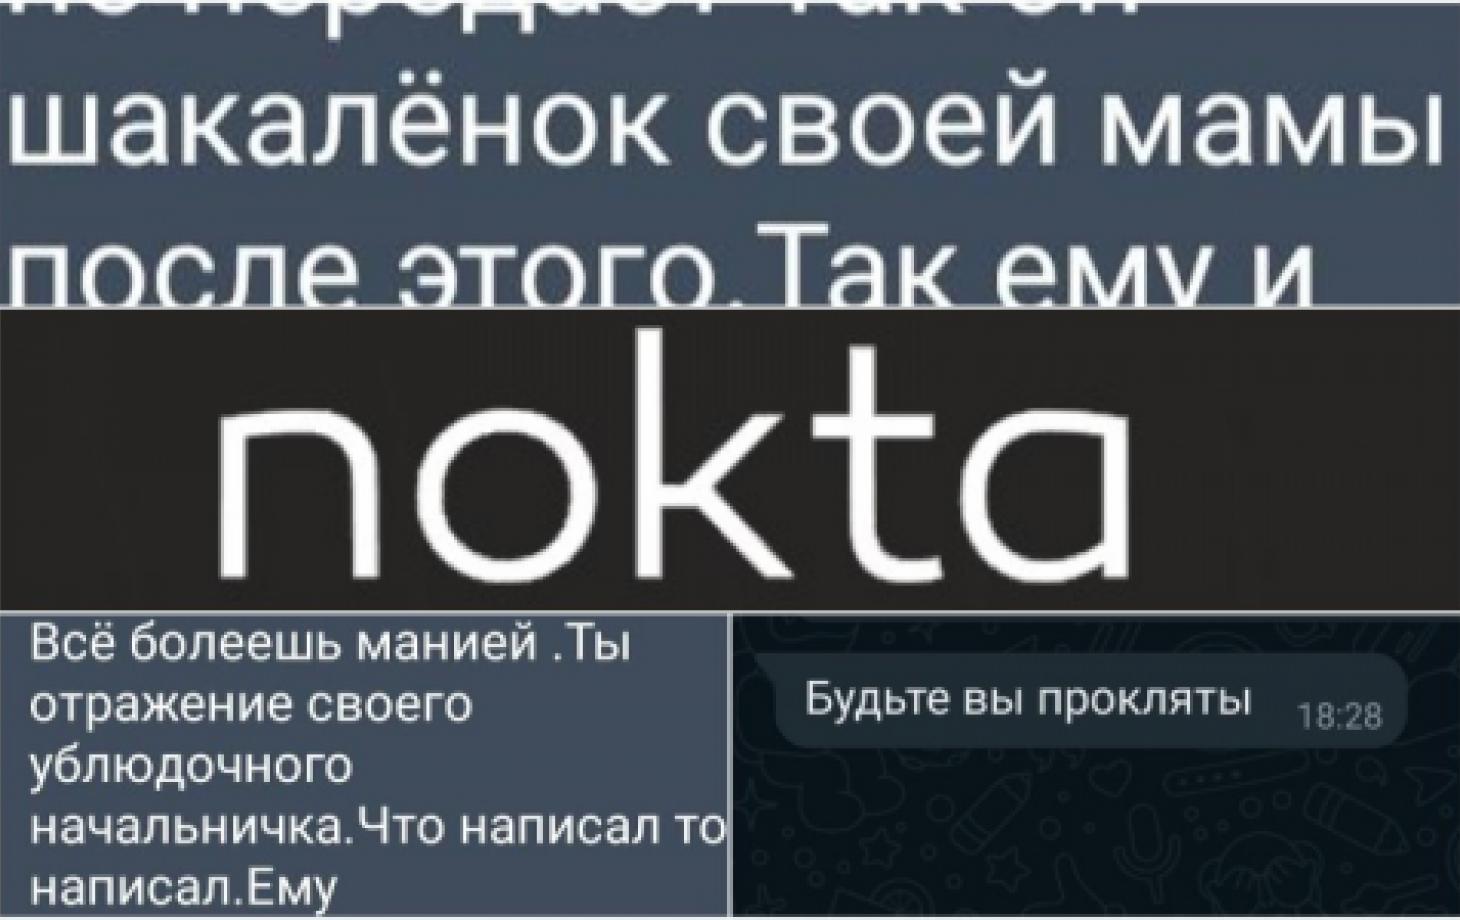 Журналисты Nokta получают угрозы и оскорбления, а сам портал называют  «проплаченным»